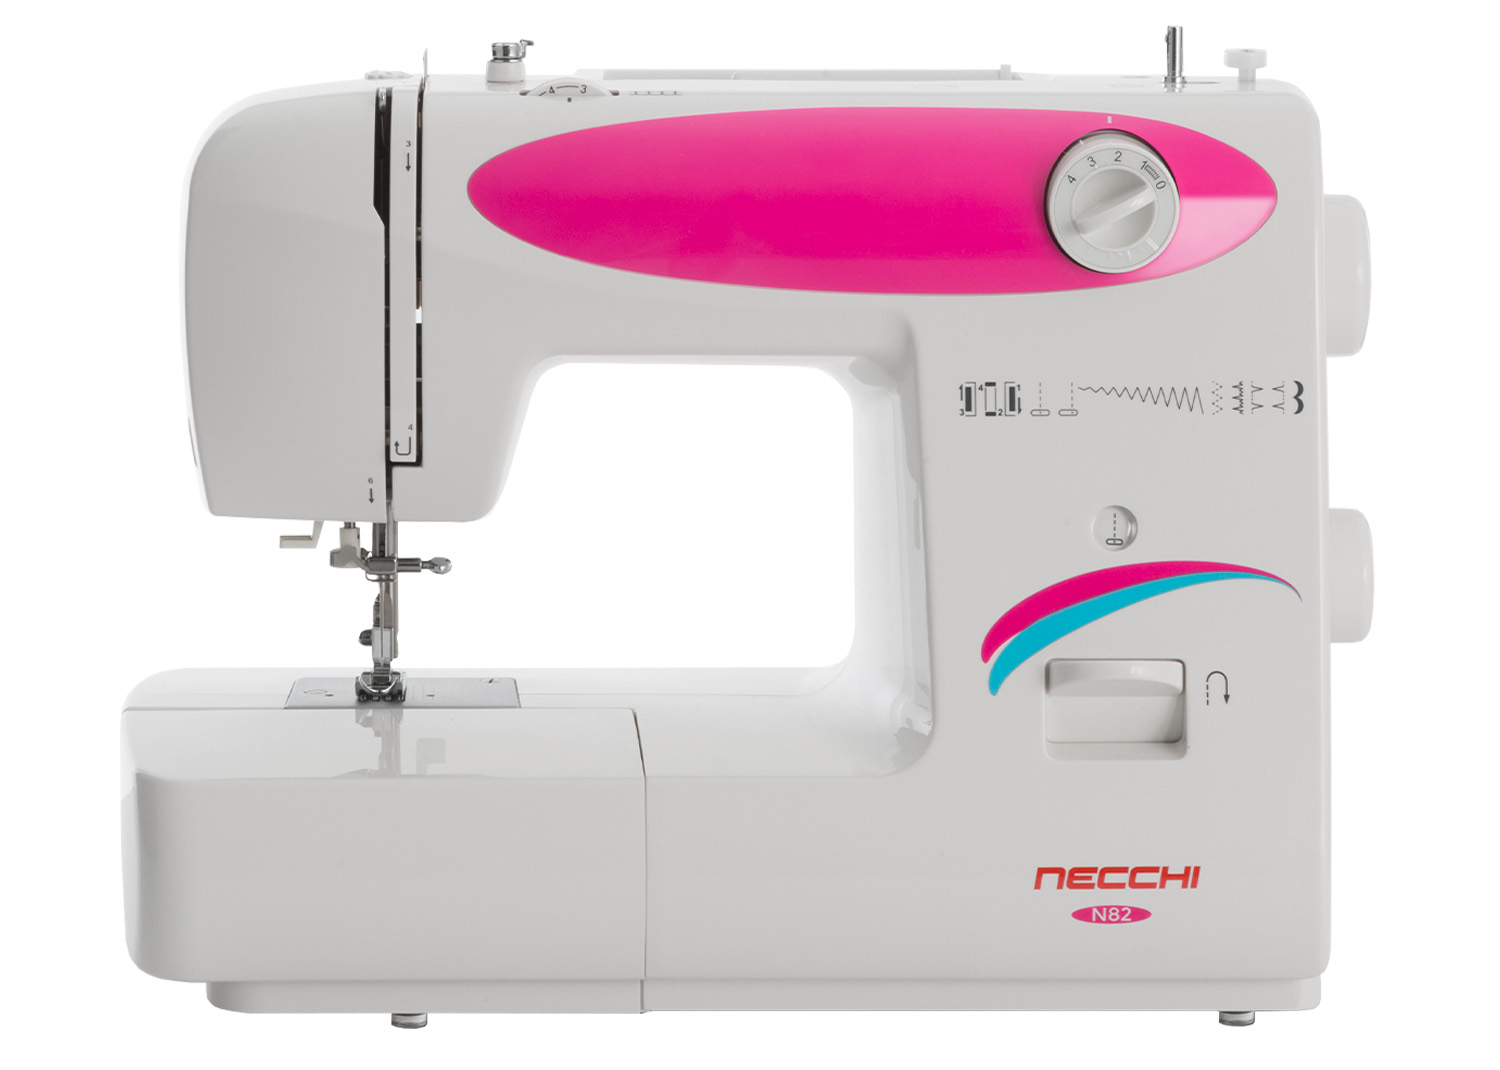 Macchine per cucire - Necchi N82 - Necchi Shop Online